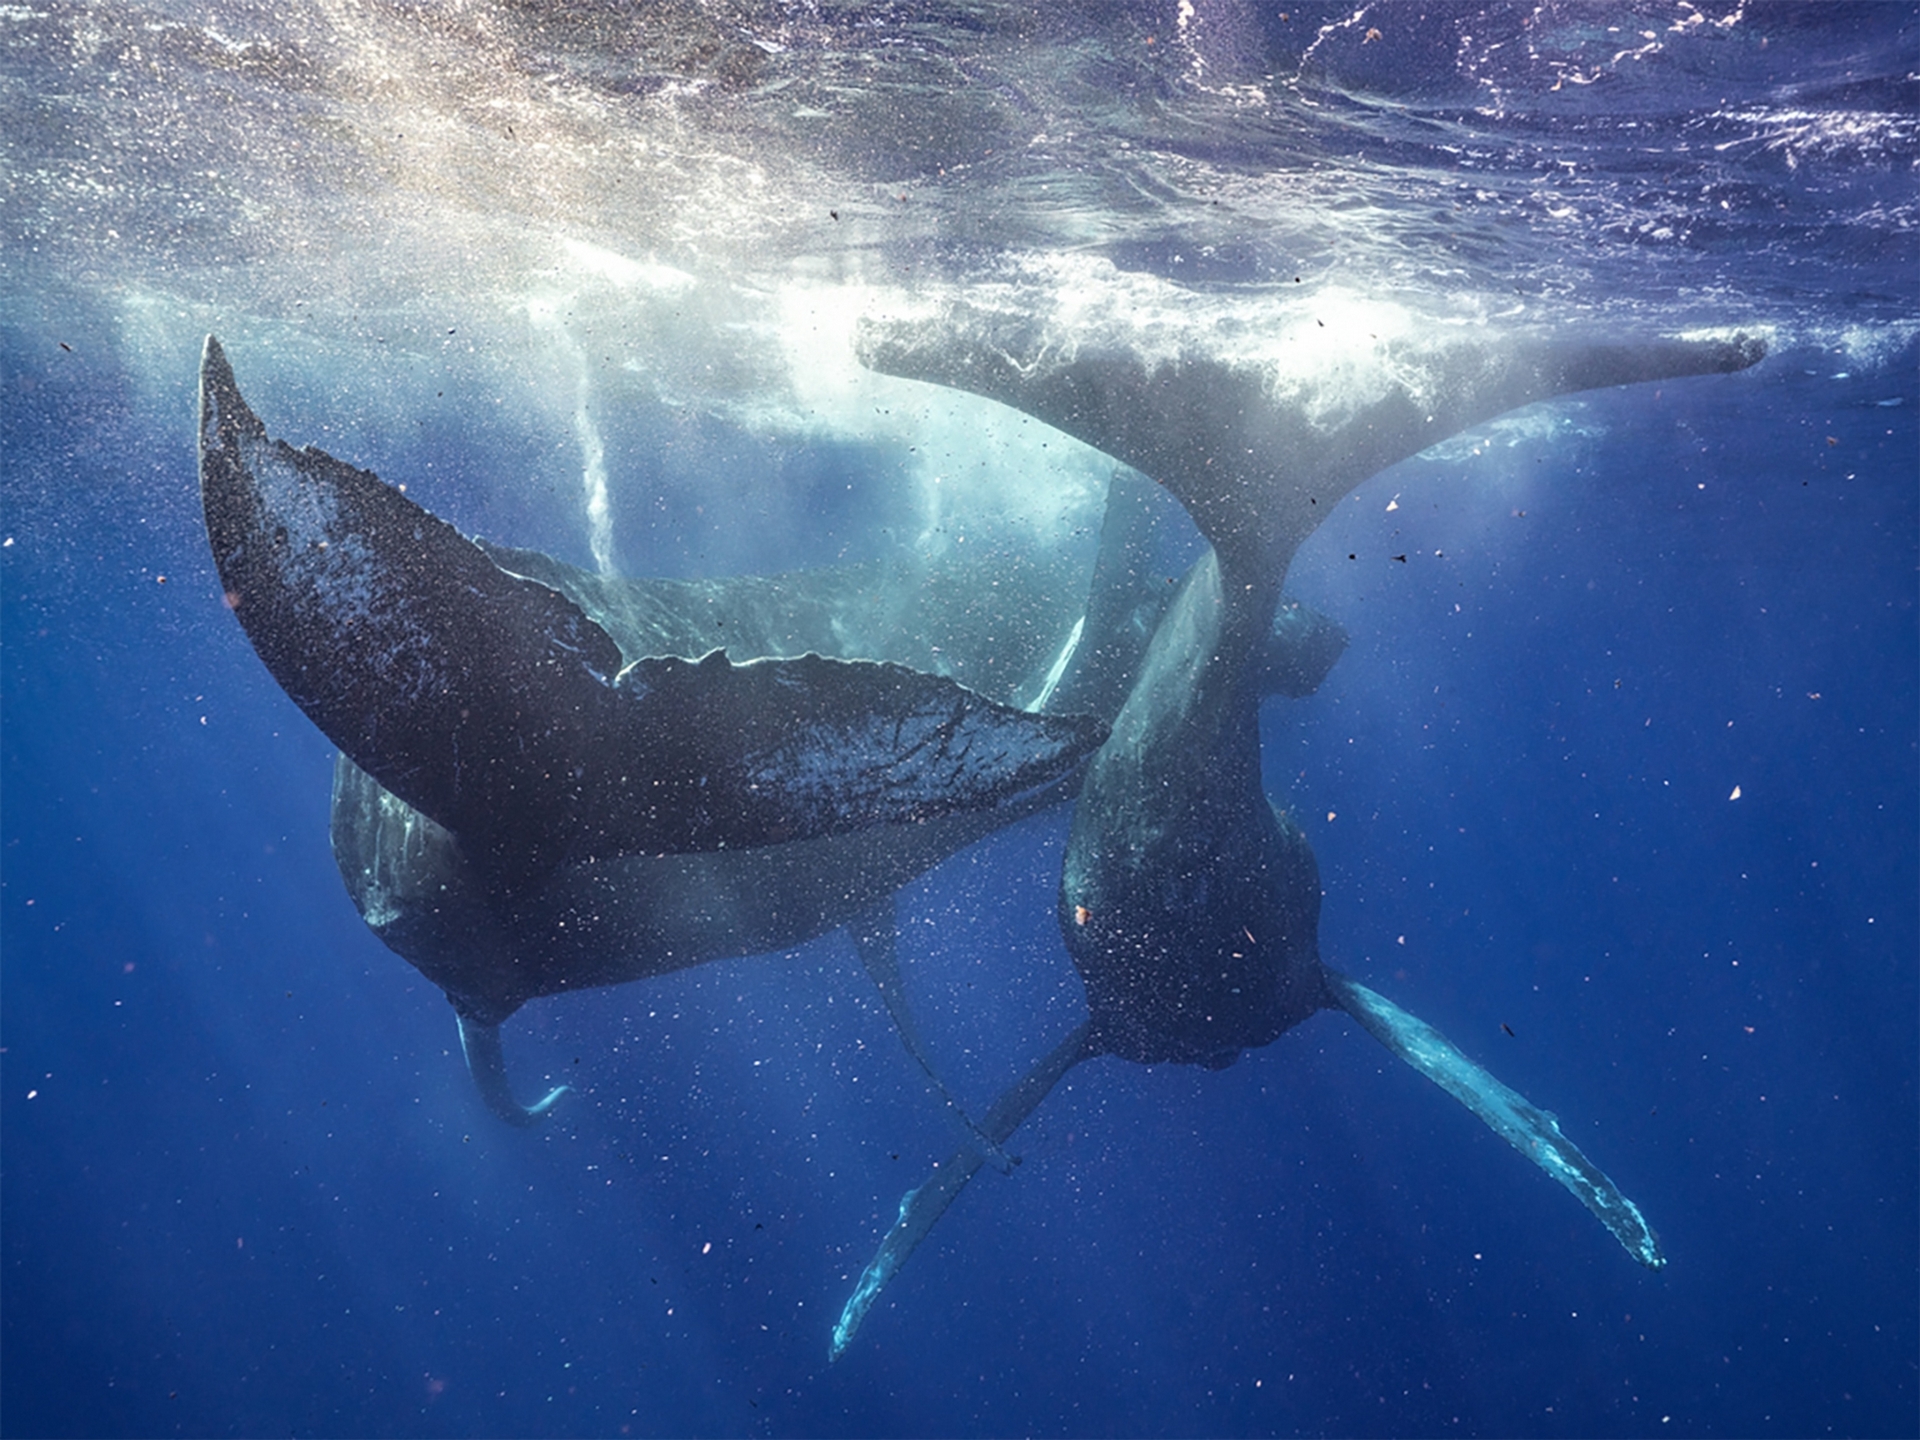 位於茂伊島的非營利組織「太平洋鯨魚基金會」（Pacific Whale Foundation）識別出這次事件中的兩隻雄性座頭鯨過去曾被命名過。PHOTOGRAPH BY PHOTOGRAPH BY LYLE KRANNICHFELD AND BRANDI ROMANO